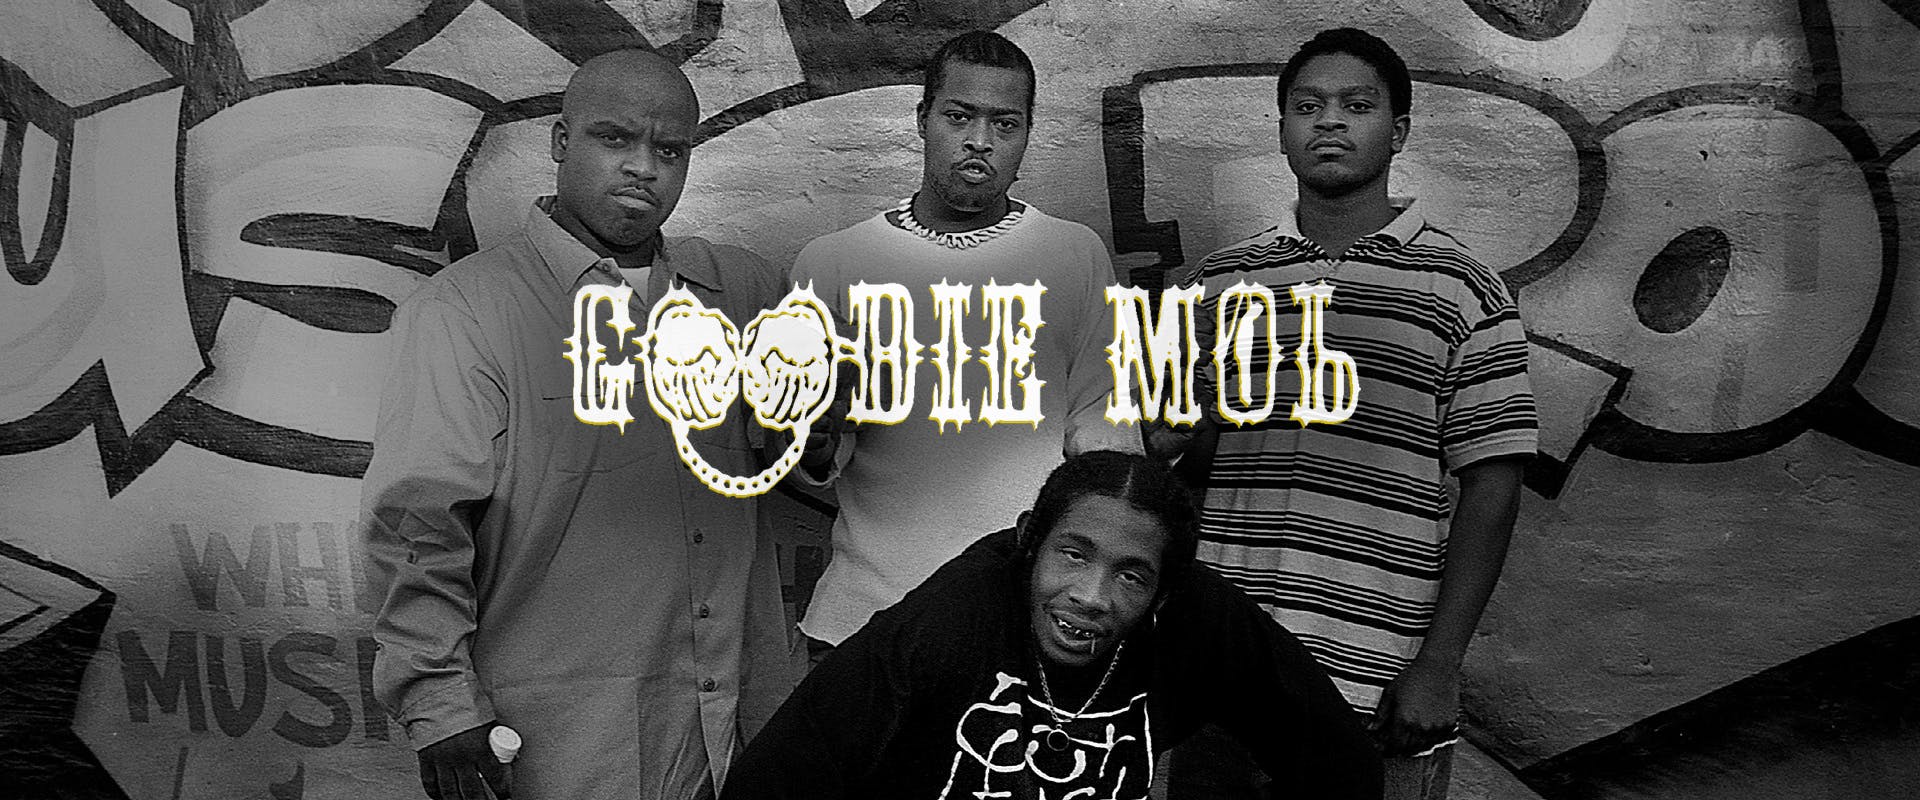 Goodie Mob